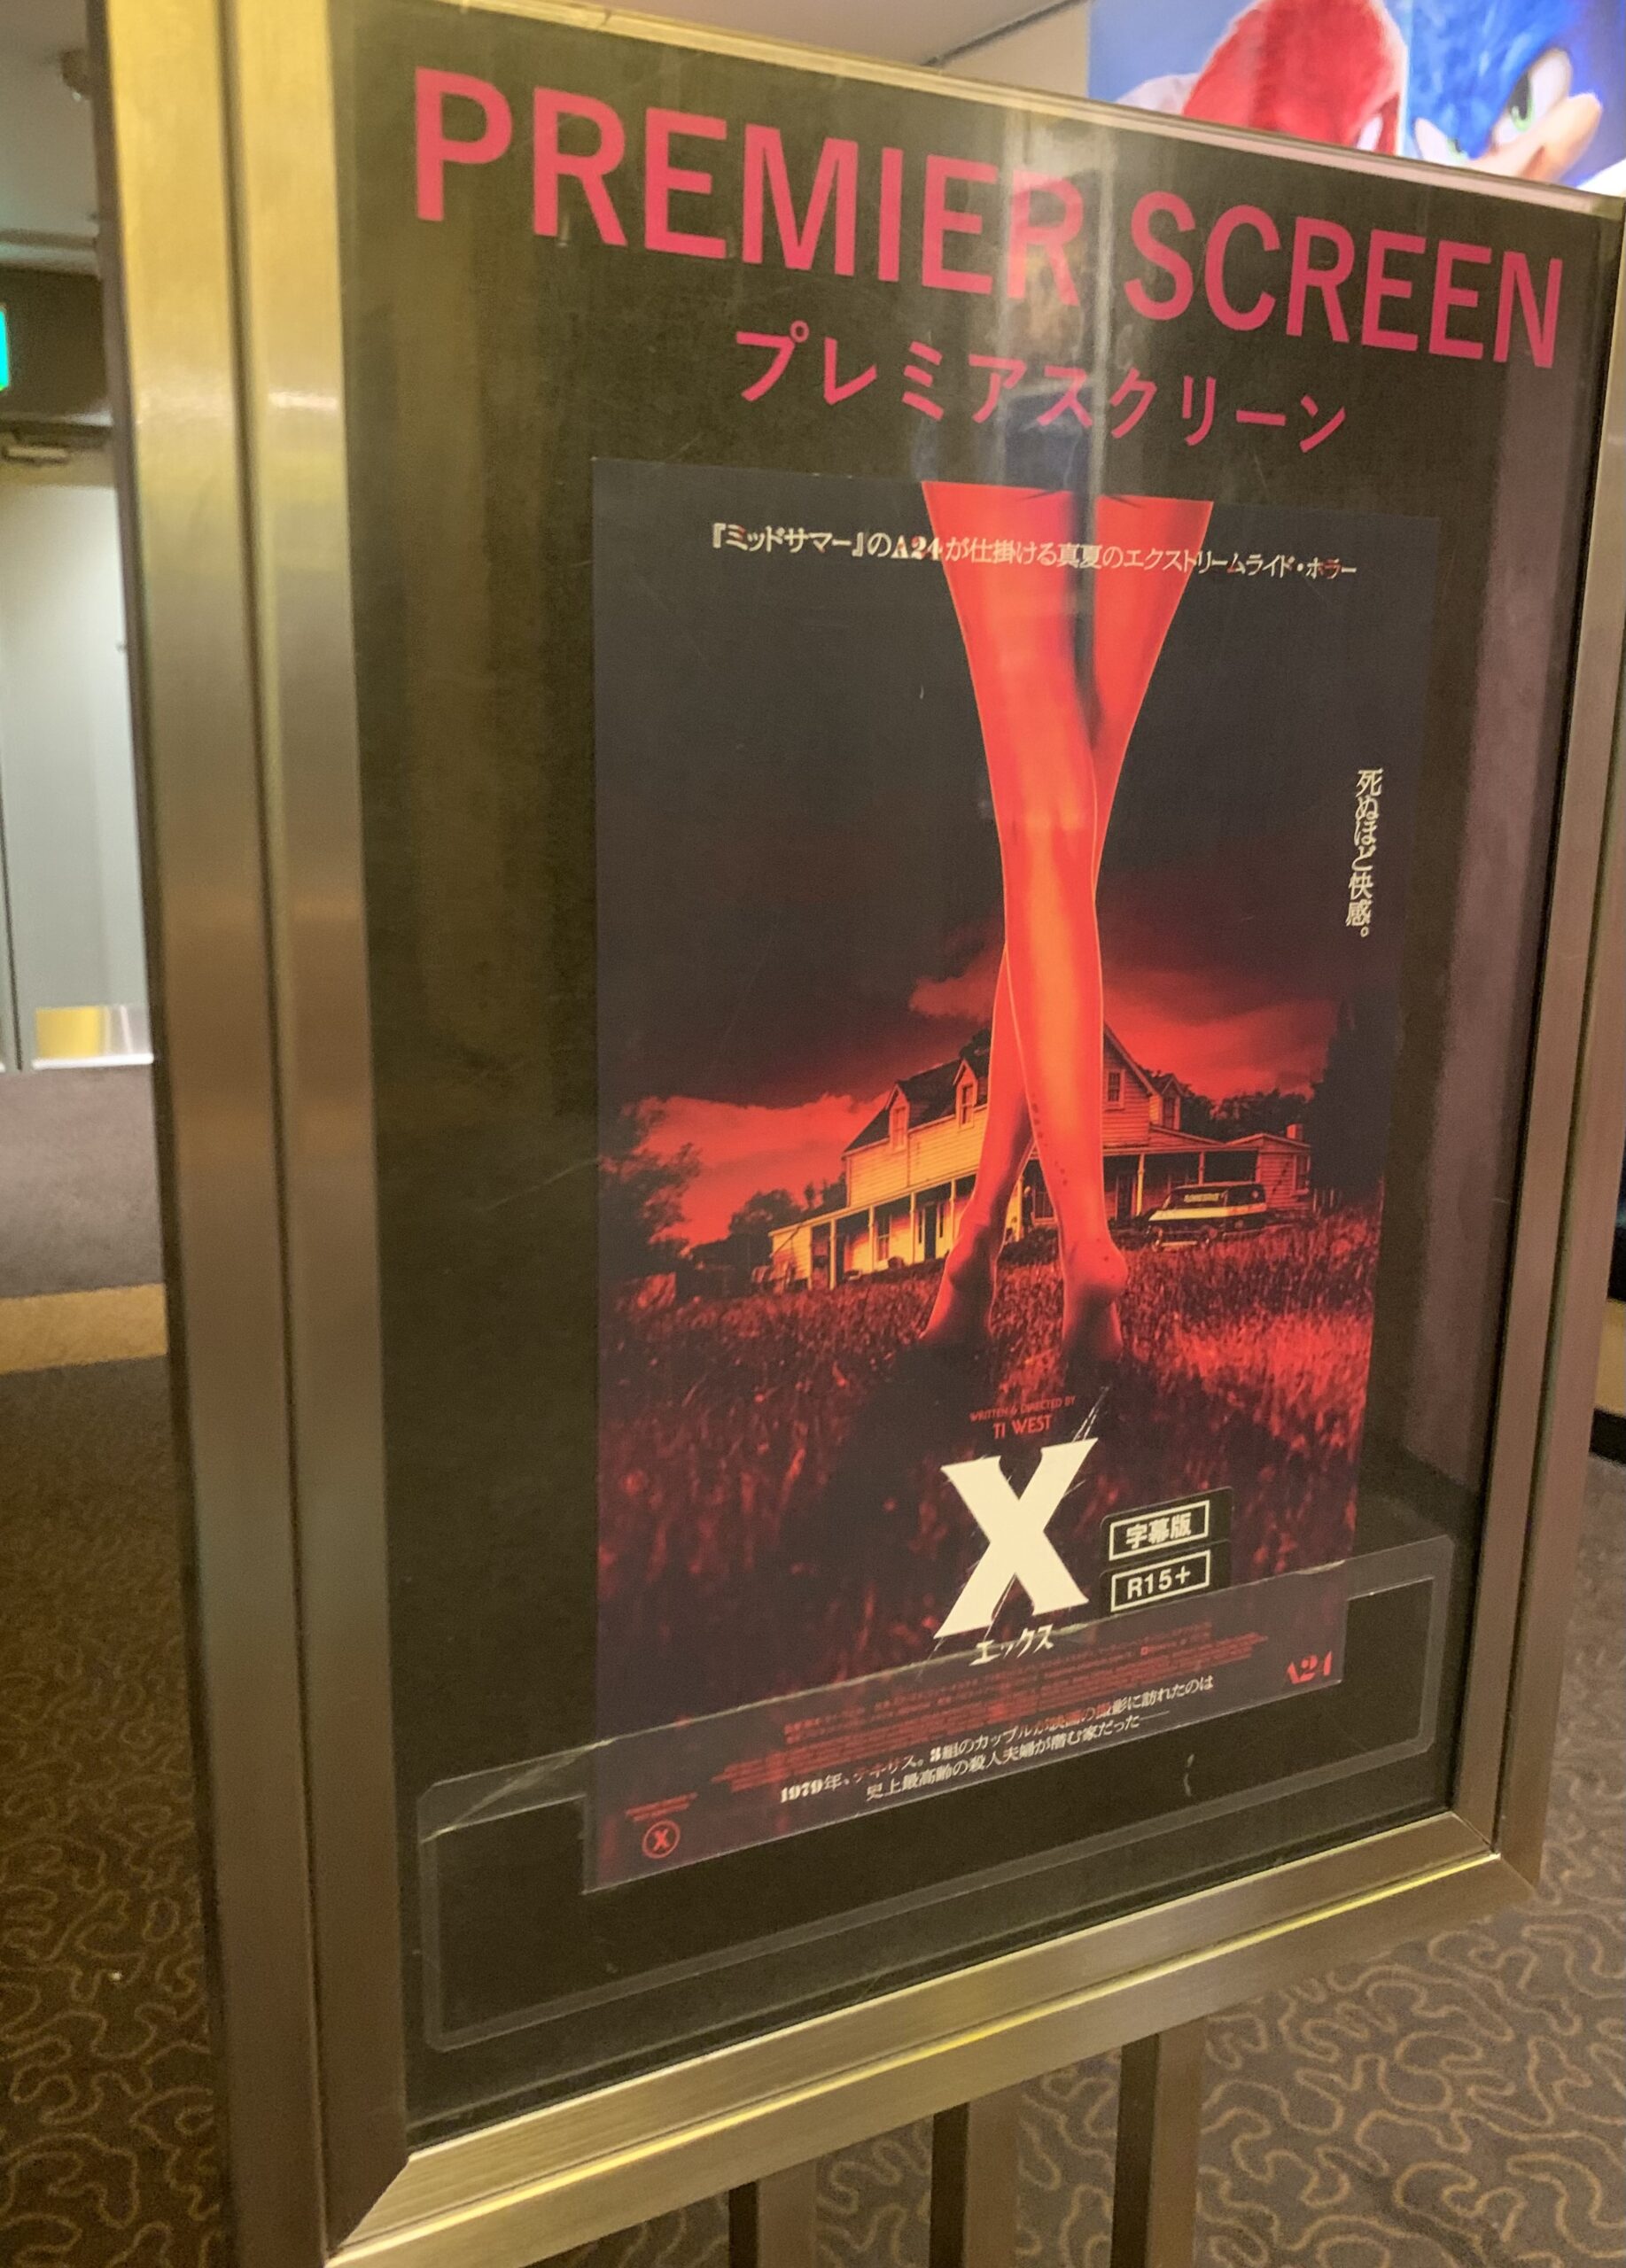 映画『X エックス』のレイトショーでTOHOシネマズのプレミアスクリーンの実力を見せてもらってきた